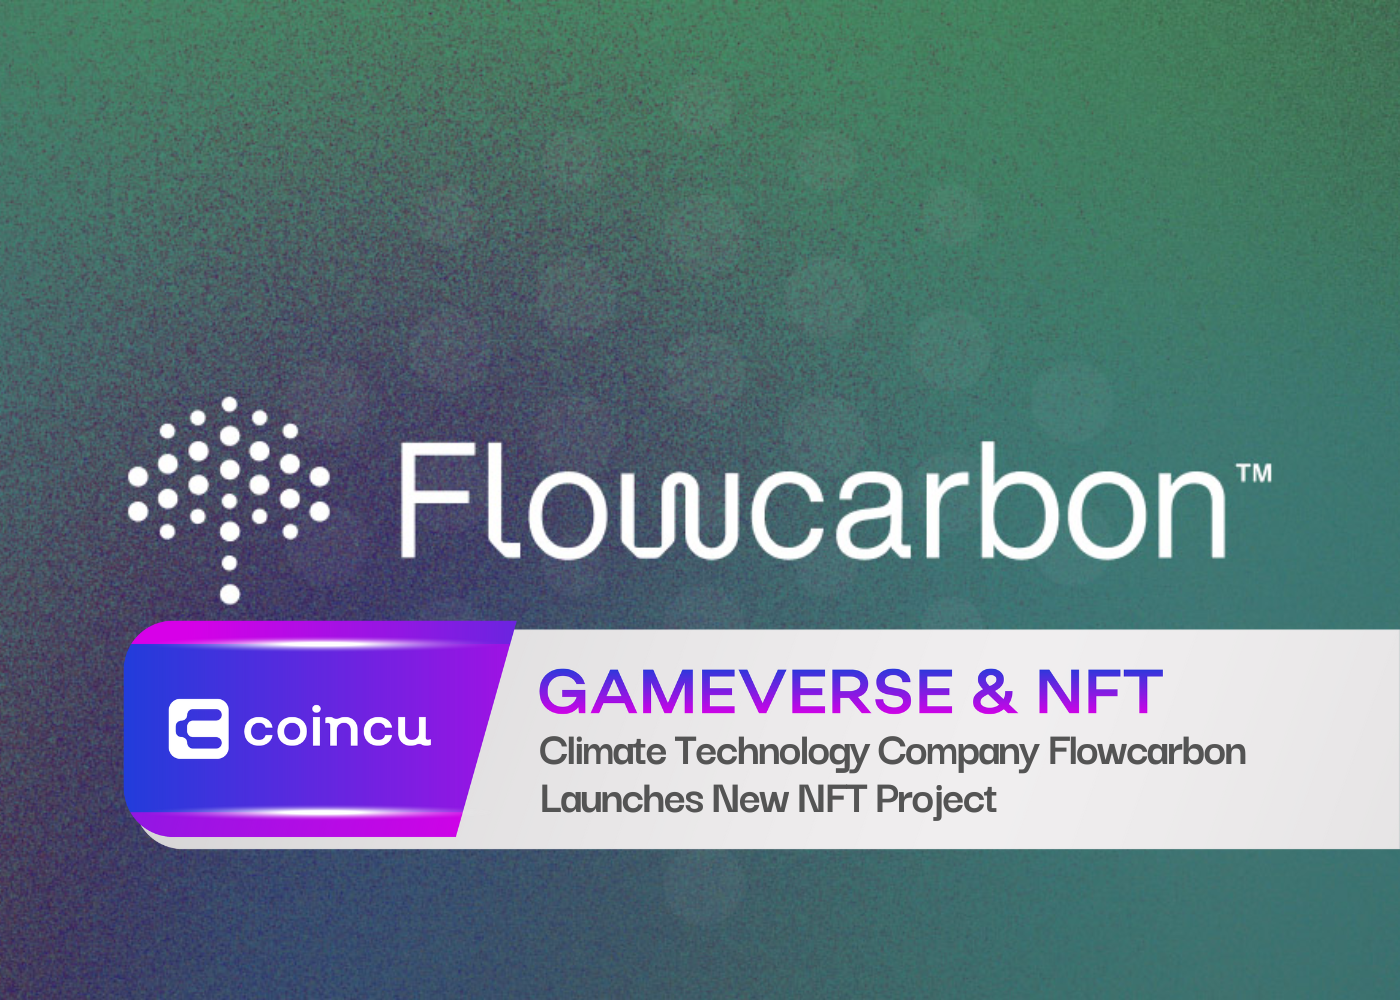 Empresa de tecnologia climática Flowcarbon lança novo projeto NFT